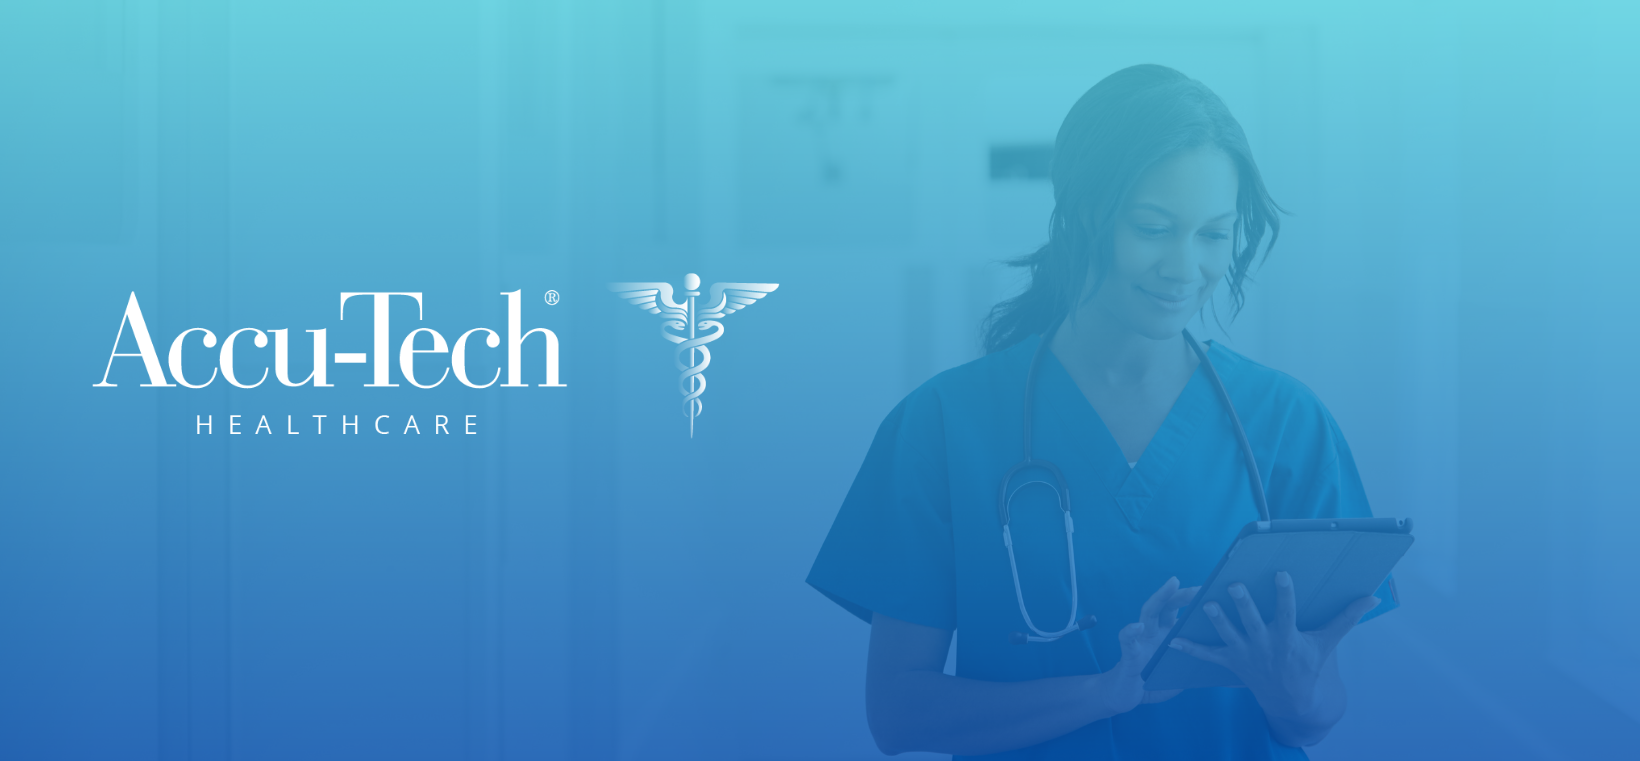 Accu-Tech Healthcare